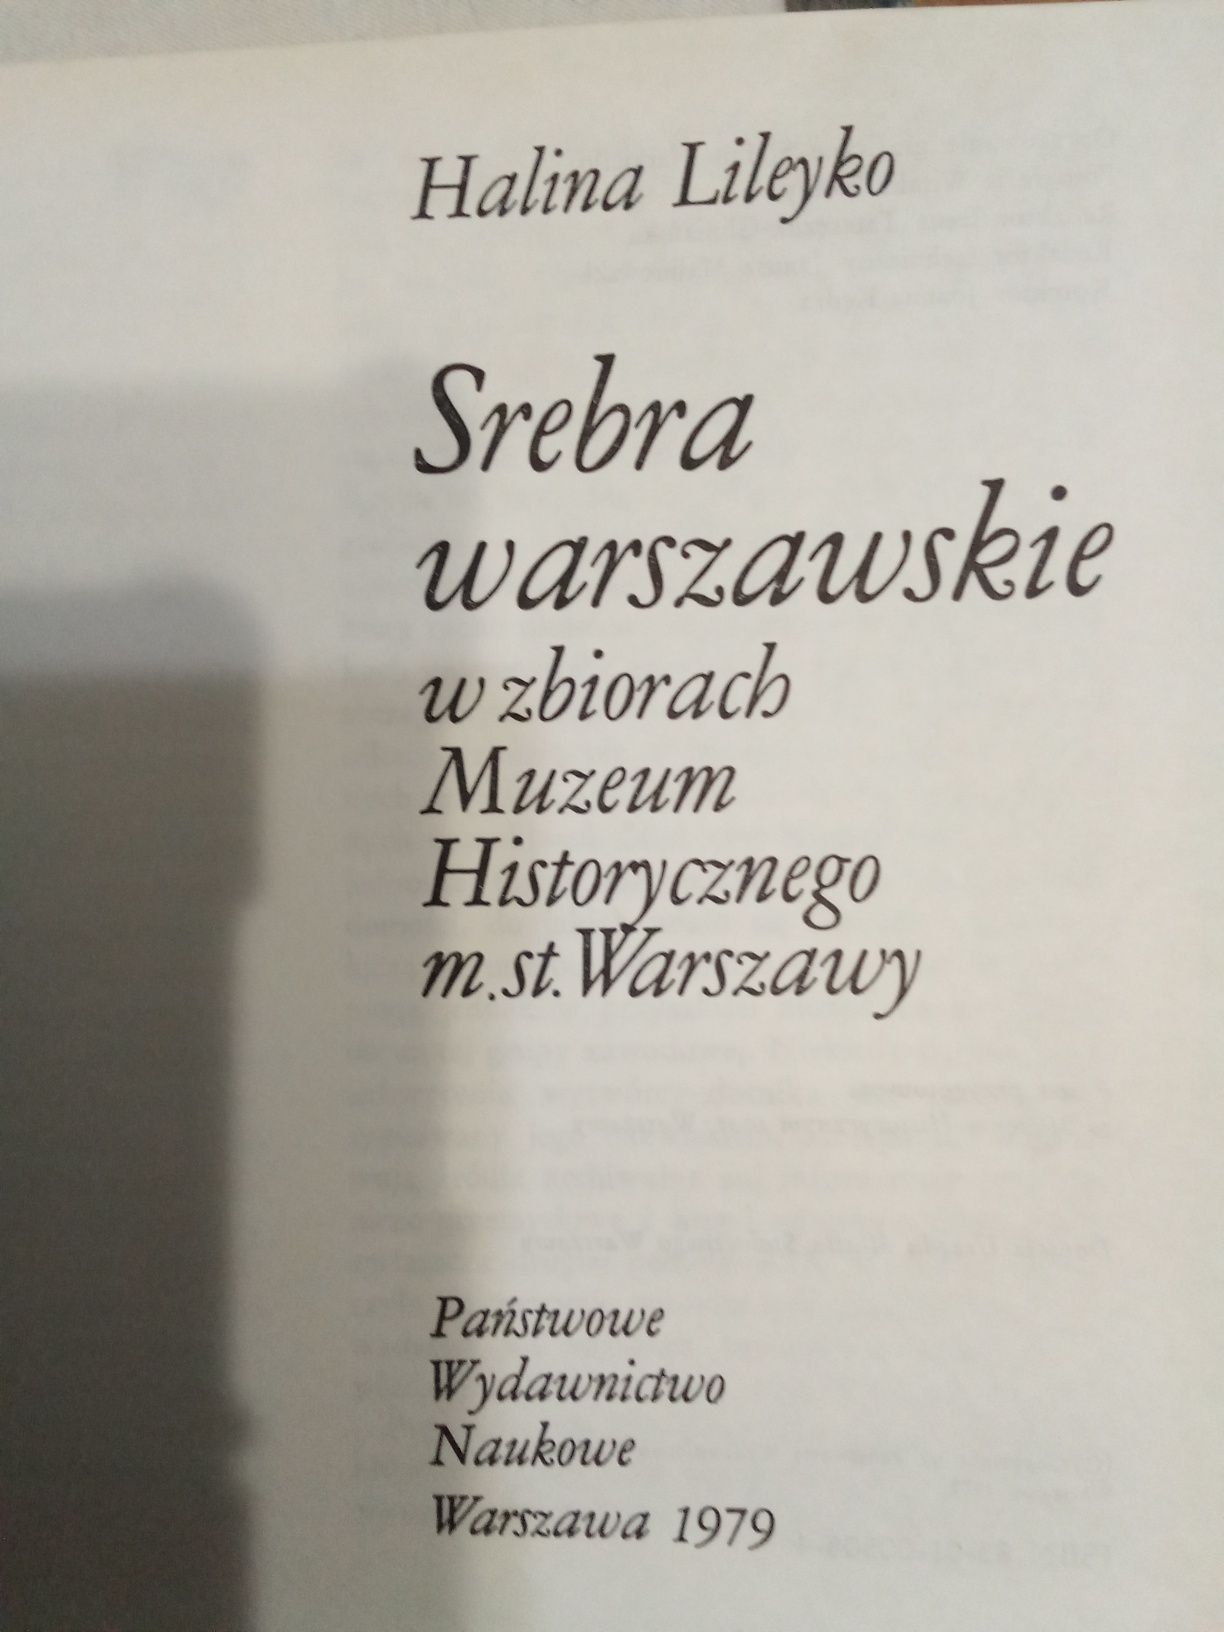 Srebra warszawskie -Halina Lileyko